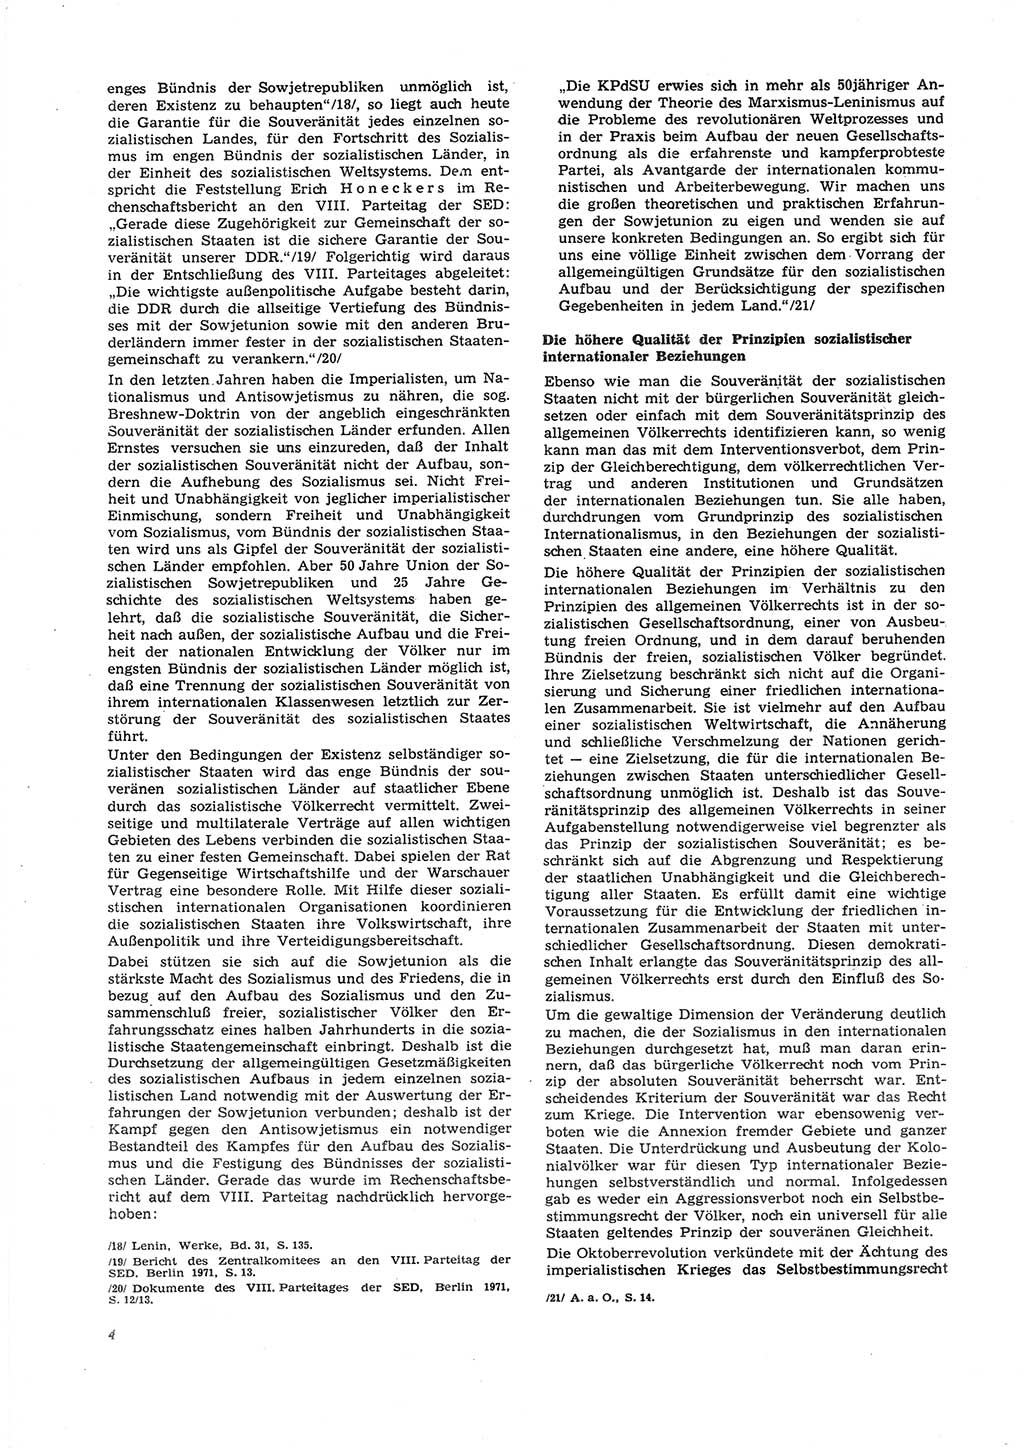 Neue Justiz (NJ), Zeitschrift für Recht und Rechtswissenschaft [Deutsche Demokratische Republik (DDR)], 27. Jahrgang 1973, Seite 4 (NJ DDR 1973, S. 4)